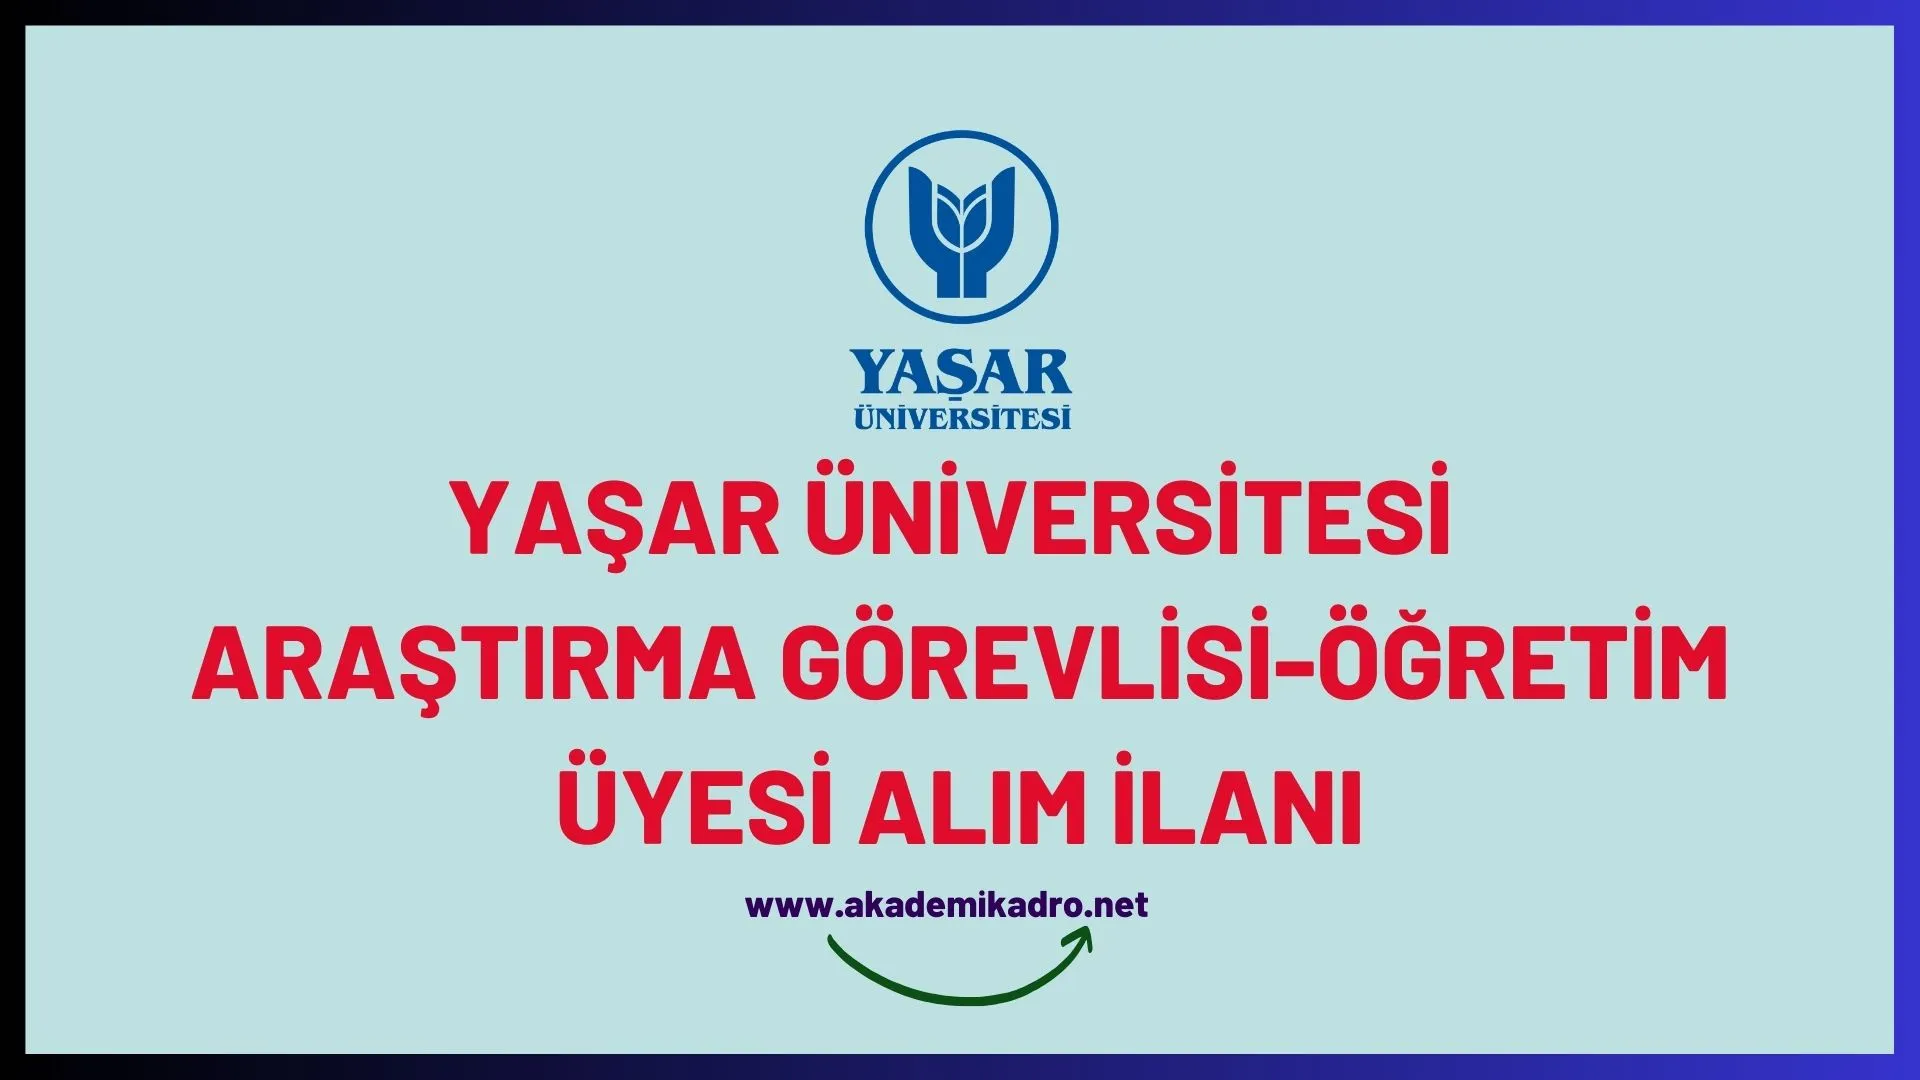 Yaşar Üniversitesi 2 Araştırma görevlisi ve öğretim üyesi alacak.